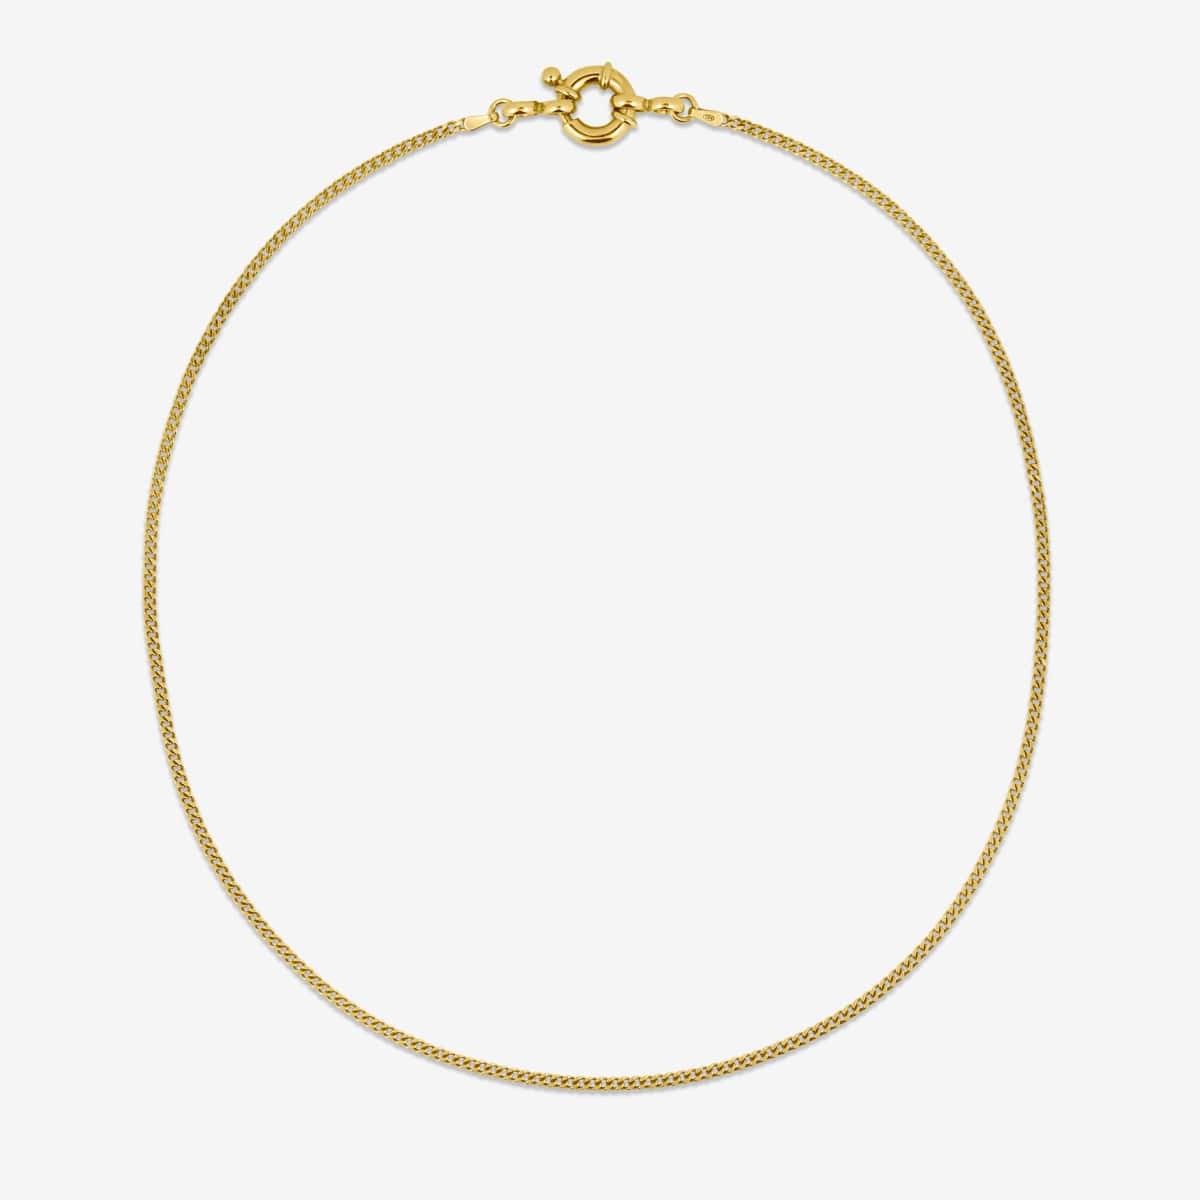 Medium Link + Big Closure 45cm - Halsketten - 18k vergoldet